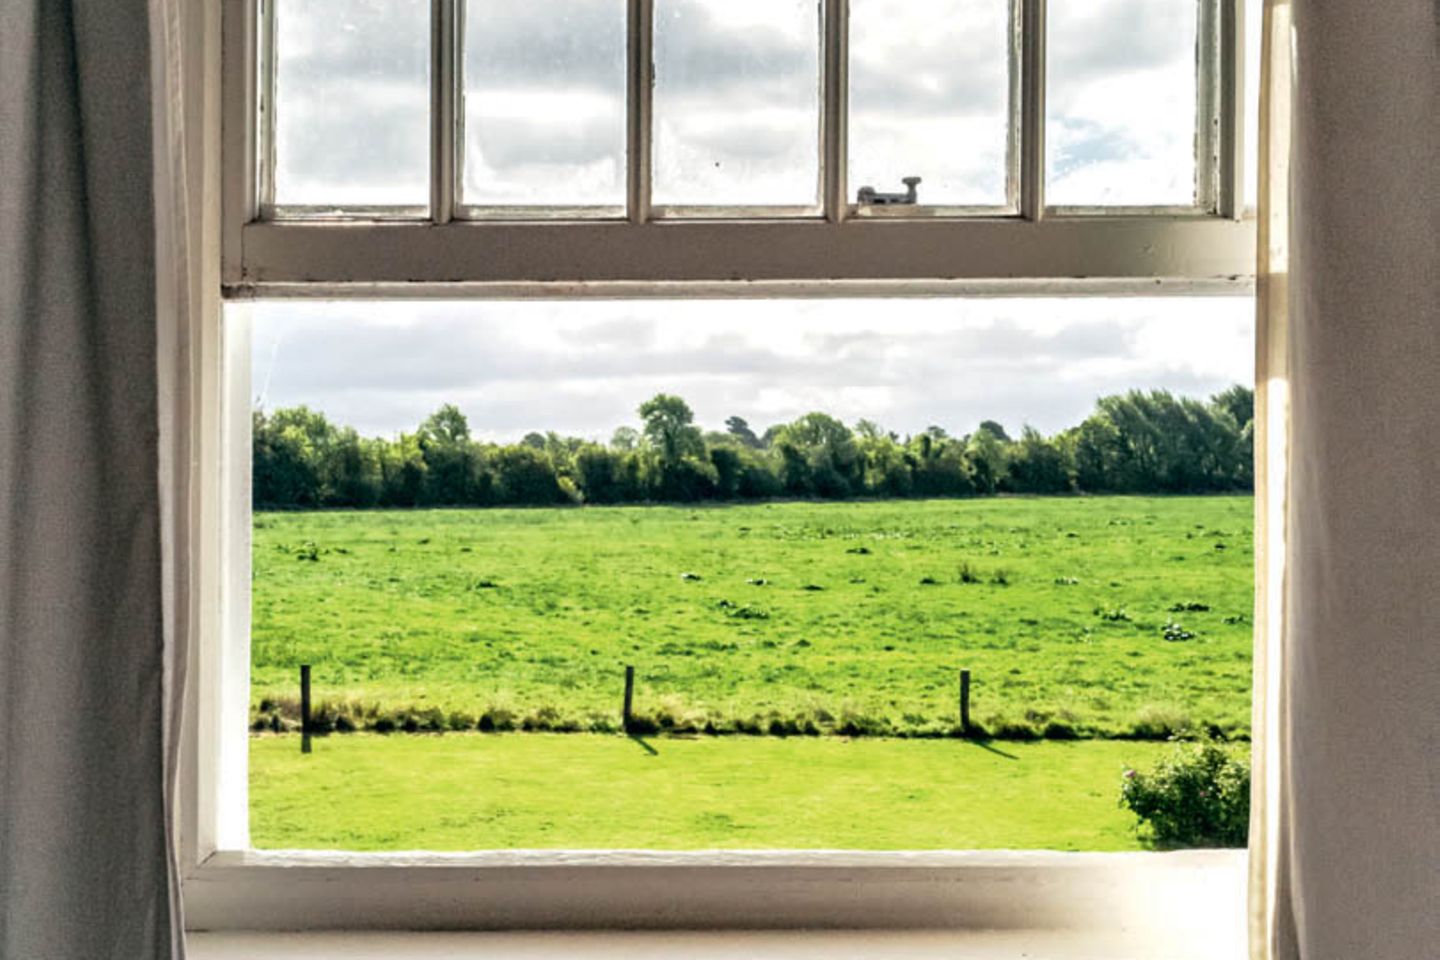 Housesitting: Fenster mit Ausblick aufs Land